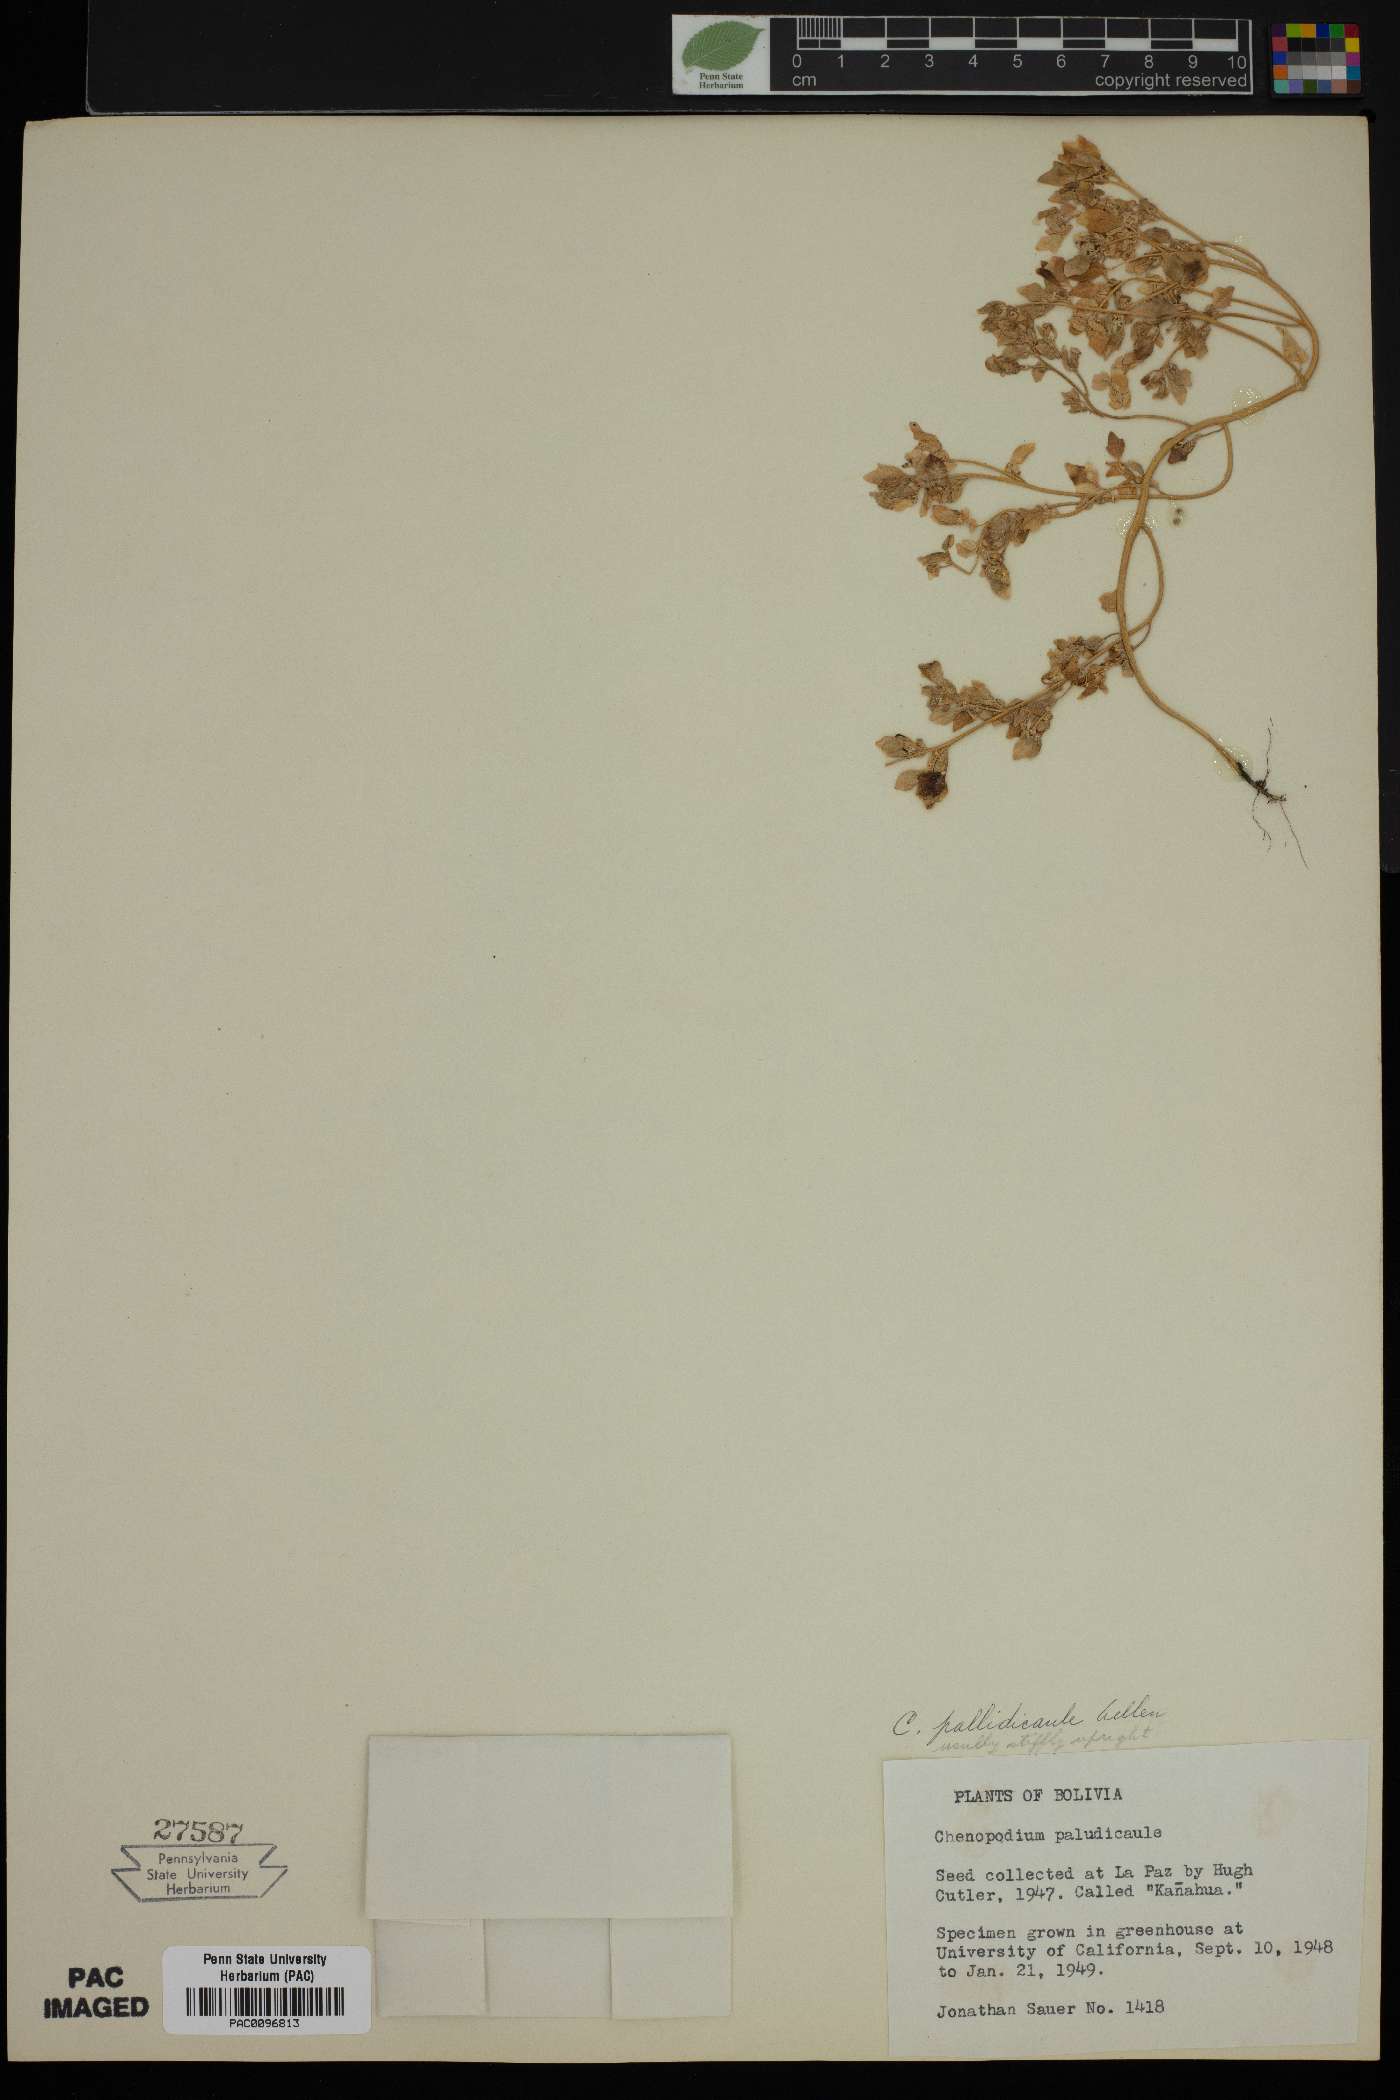 Chenopodium pallidicaule image